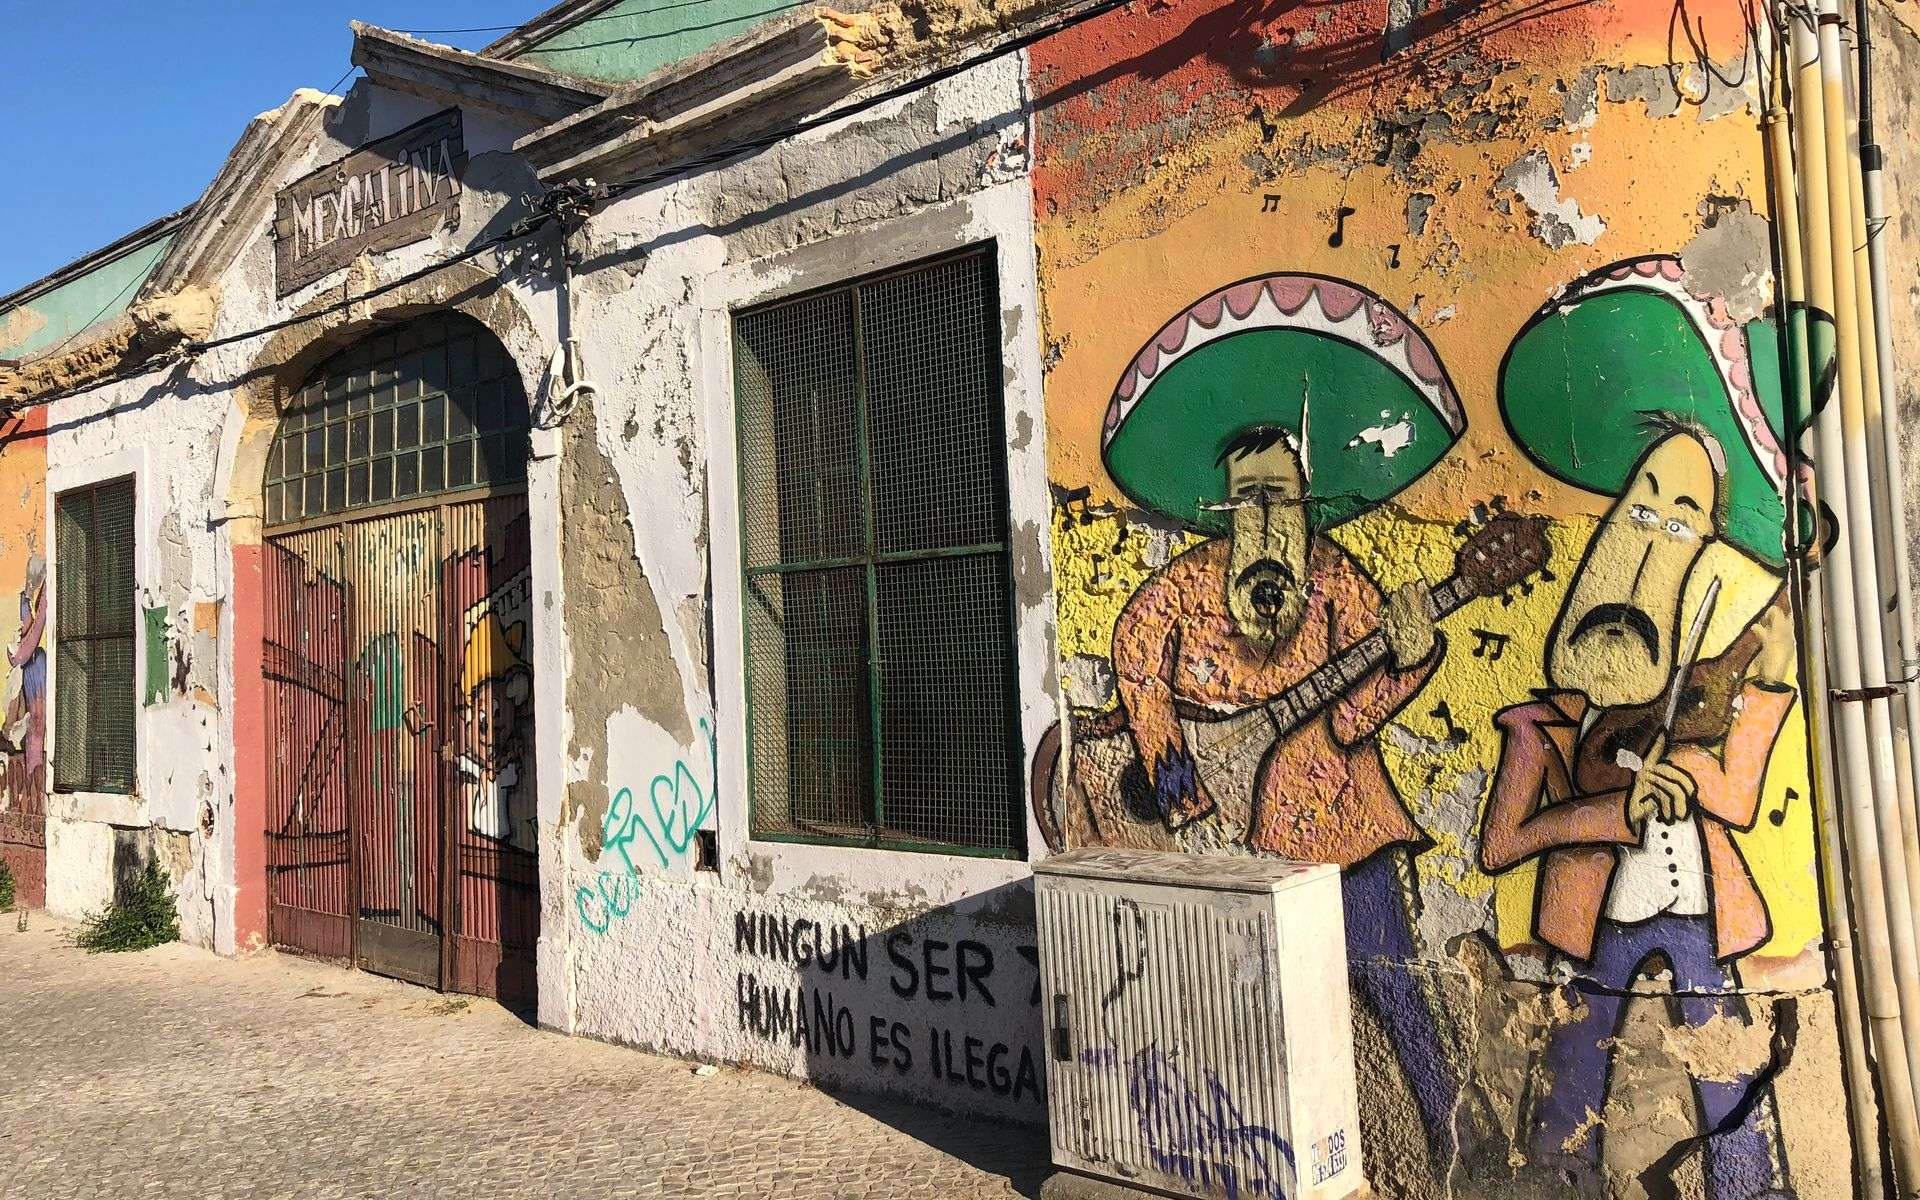 Se seguir pela avenida,700 metros, em direção à lota dos pescadores e zona dos restaurantes vai encontrar um mural dedicado ao México.